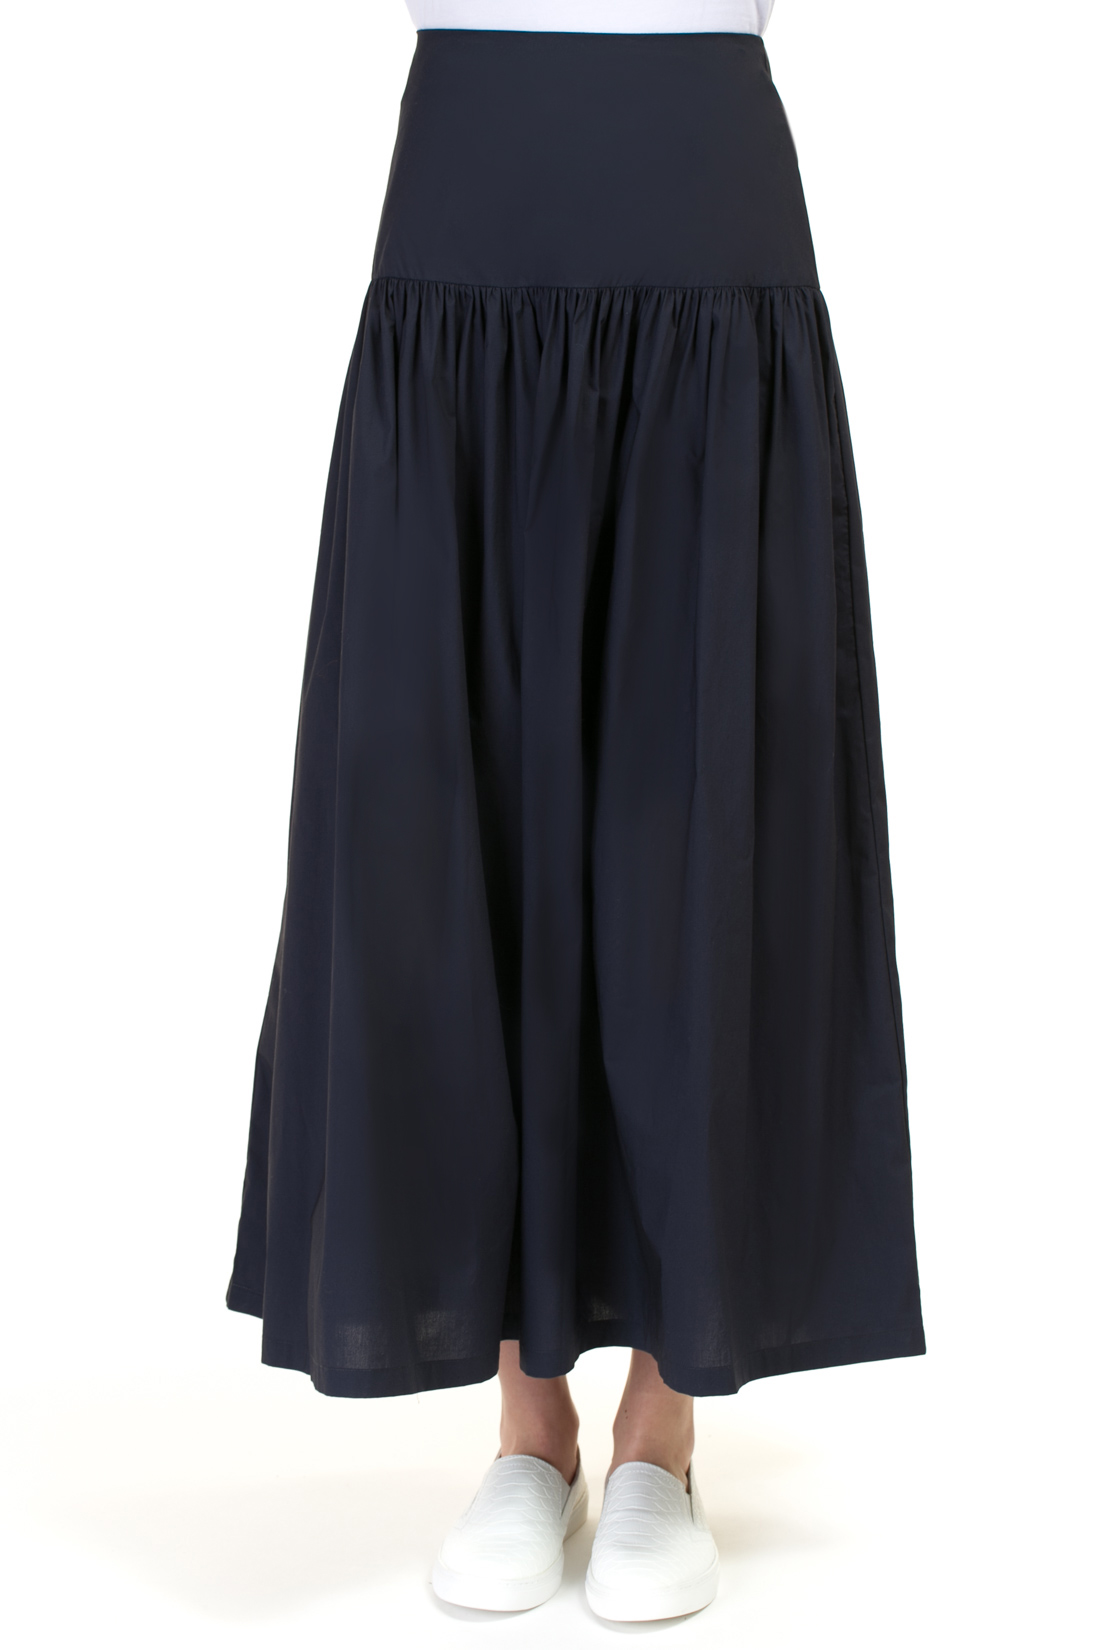 Длинная юбка с кокеткой (арт. baon B477022), размер L, цвет синий Длинная юбка с кокеткой (арт. baon B477022) - фото 5